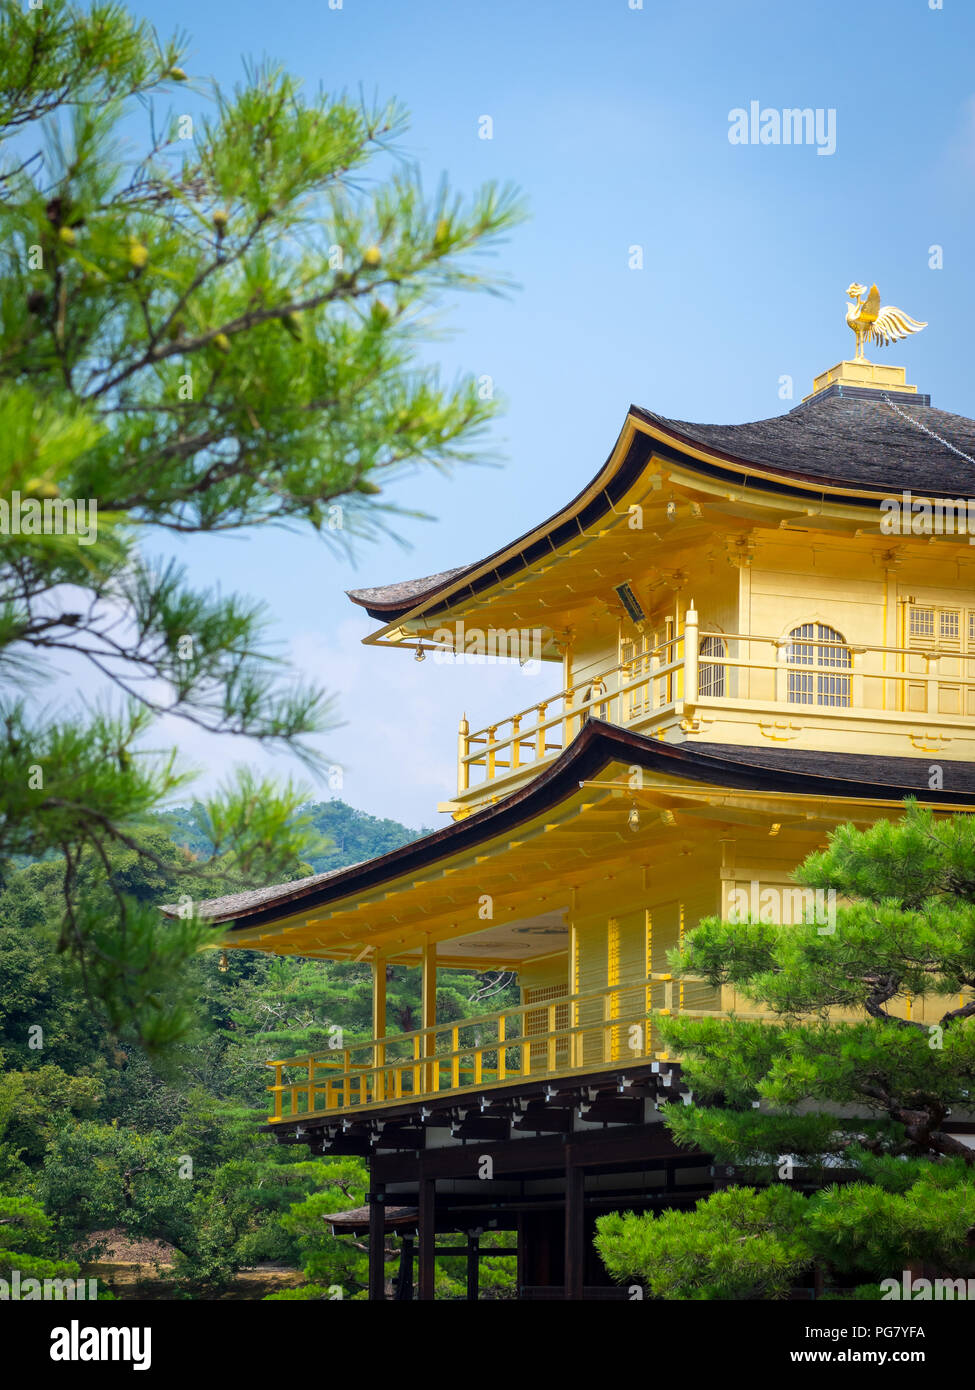 Kinkaku-ji (conosciuto anche come Kinkakuji o Rokuon-ji), il Tempio del Padiglione d'Oro, è uno spettacolare tempio buddista Zen situato a Kyoto, in Giappone. Foto Stock